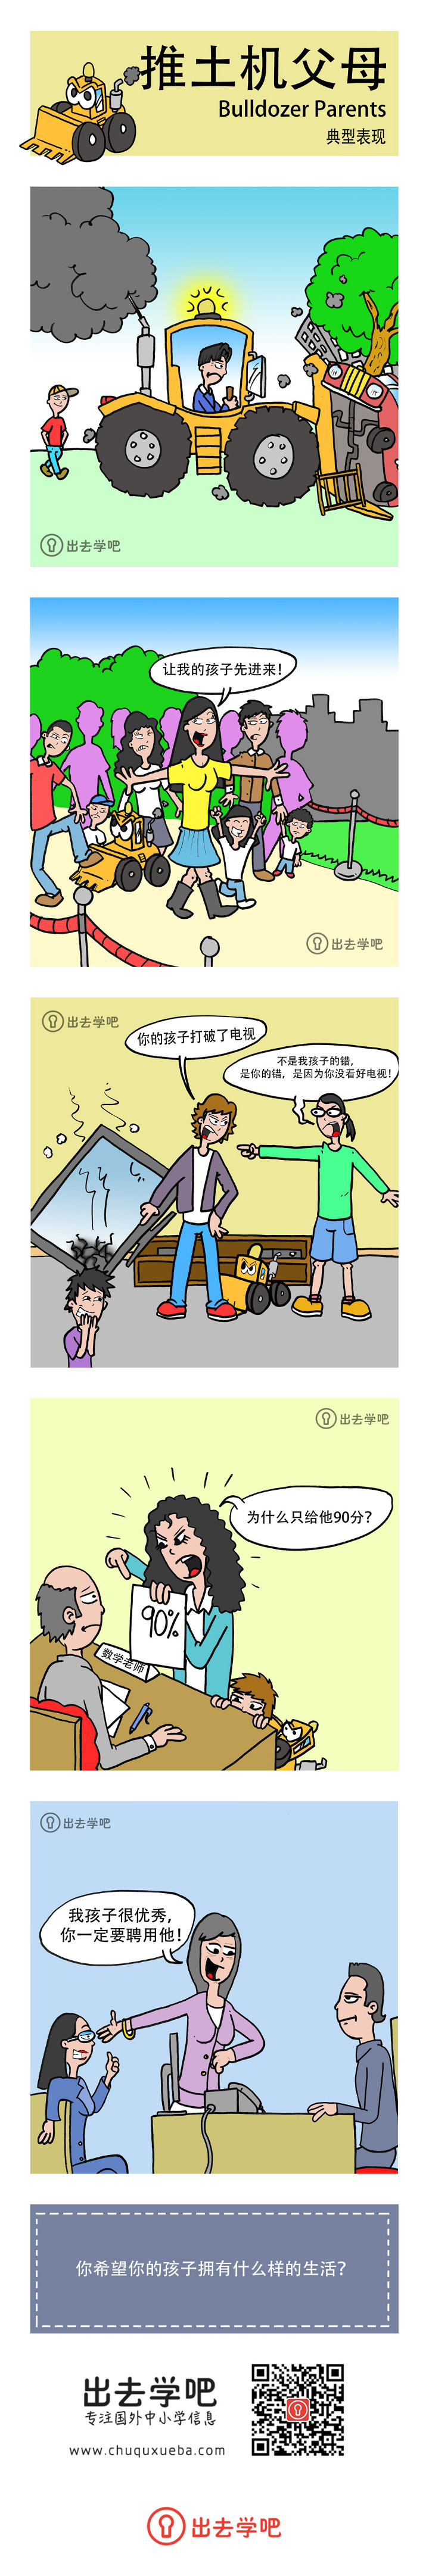 推土机父母 (Bulldozer Parents) 典型表现的漫画